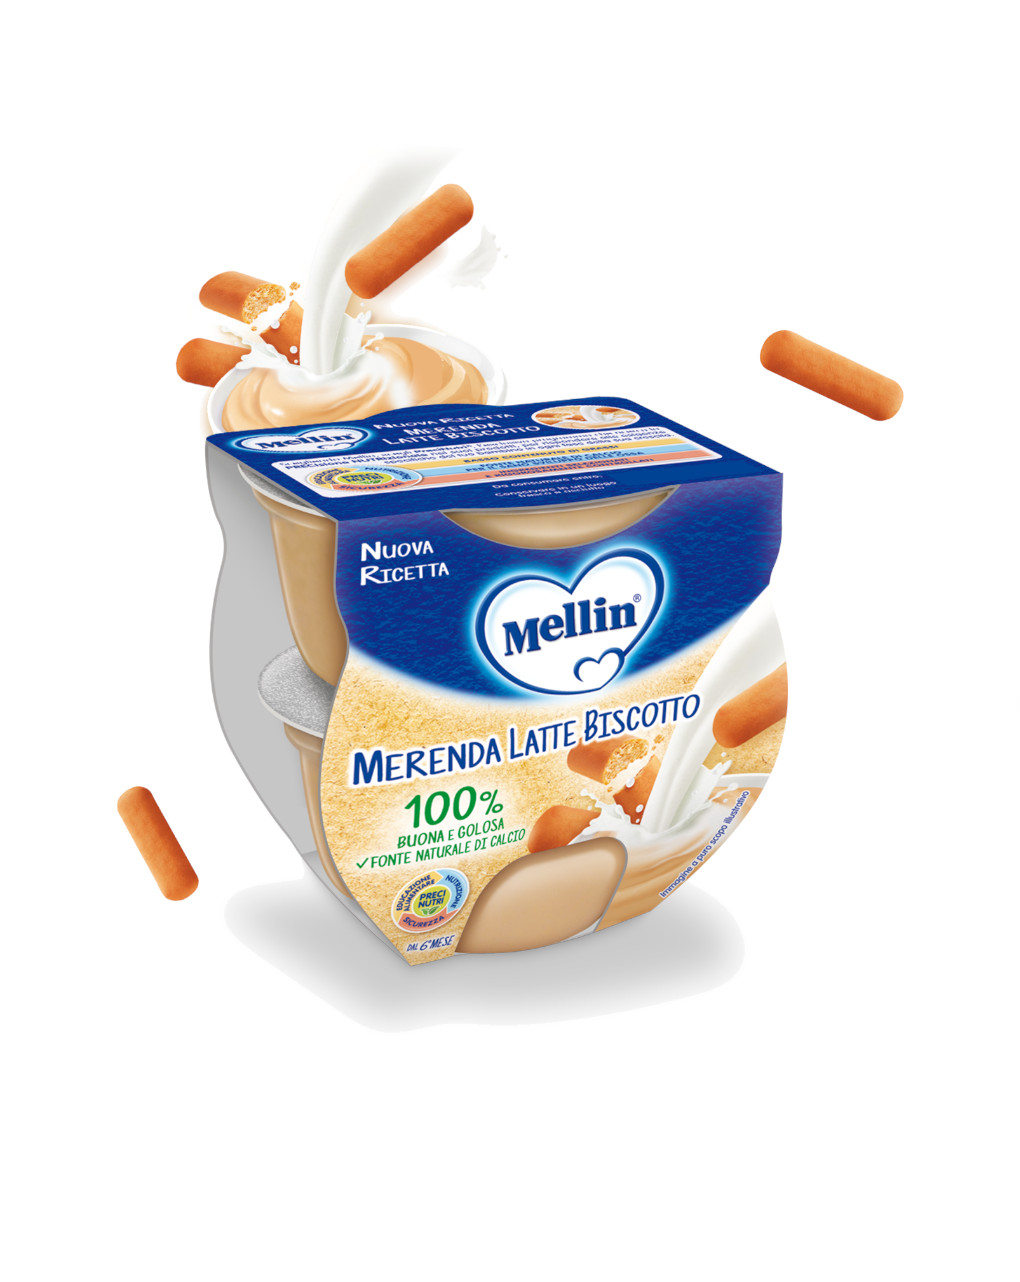 Mellin - merenda latte biscotto 2x100g